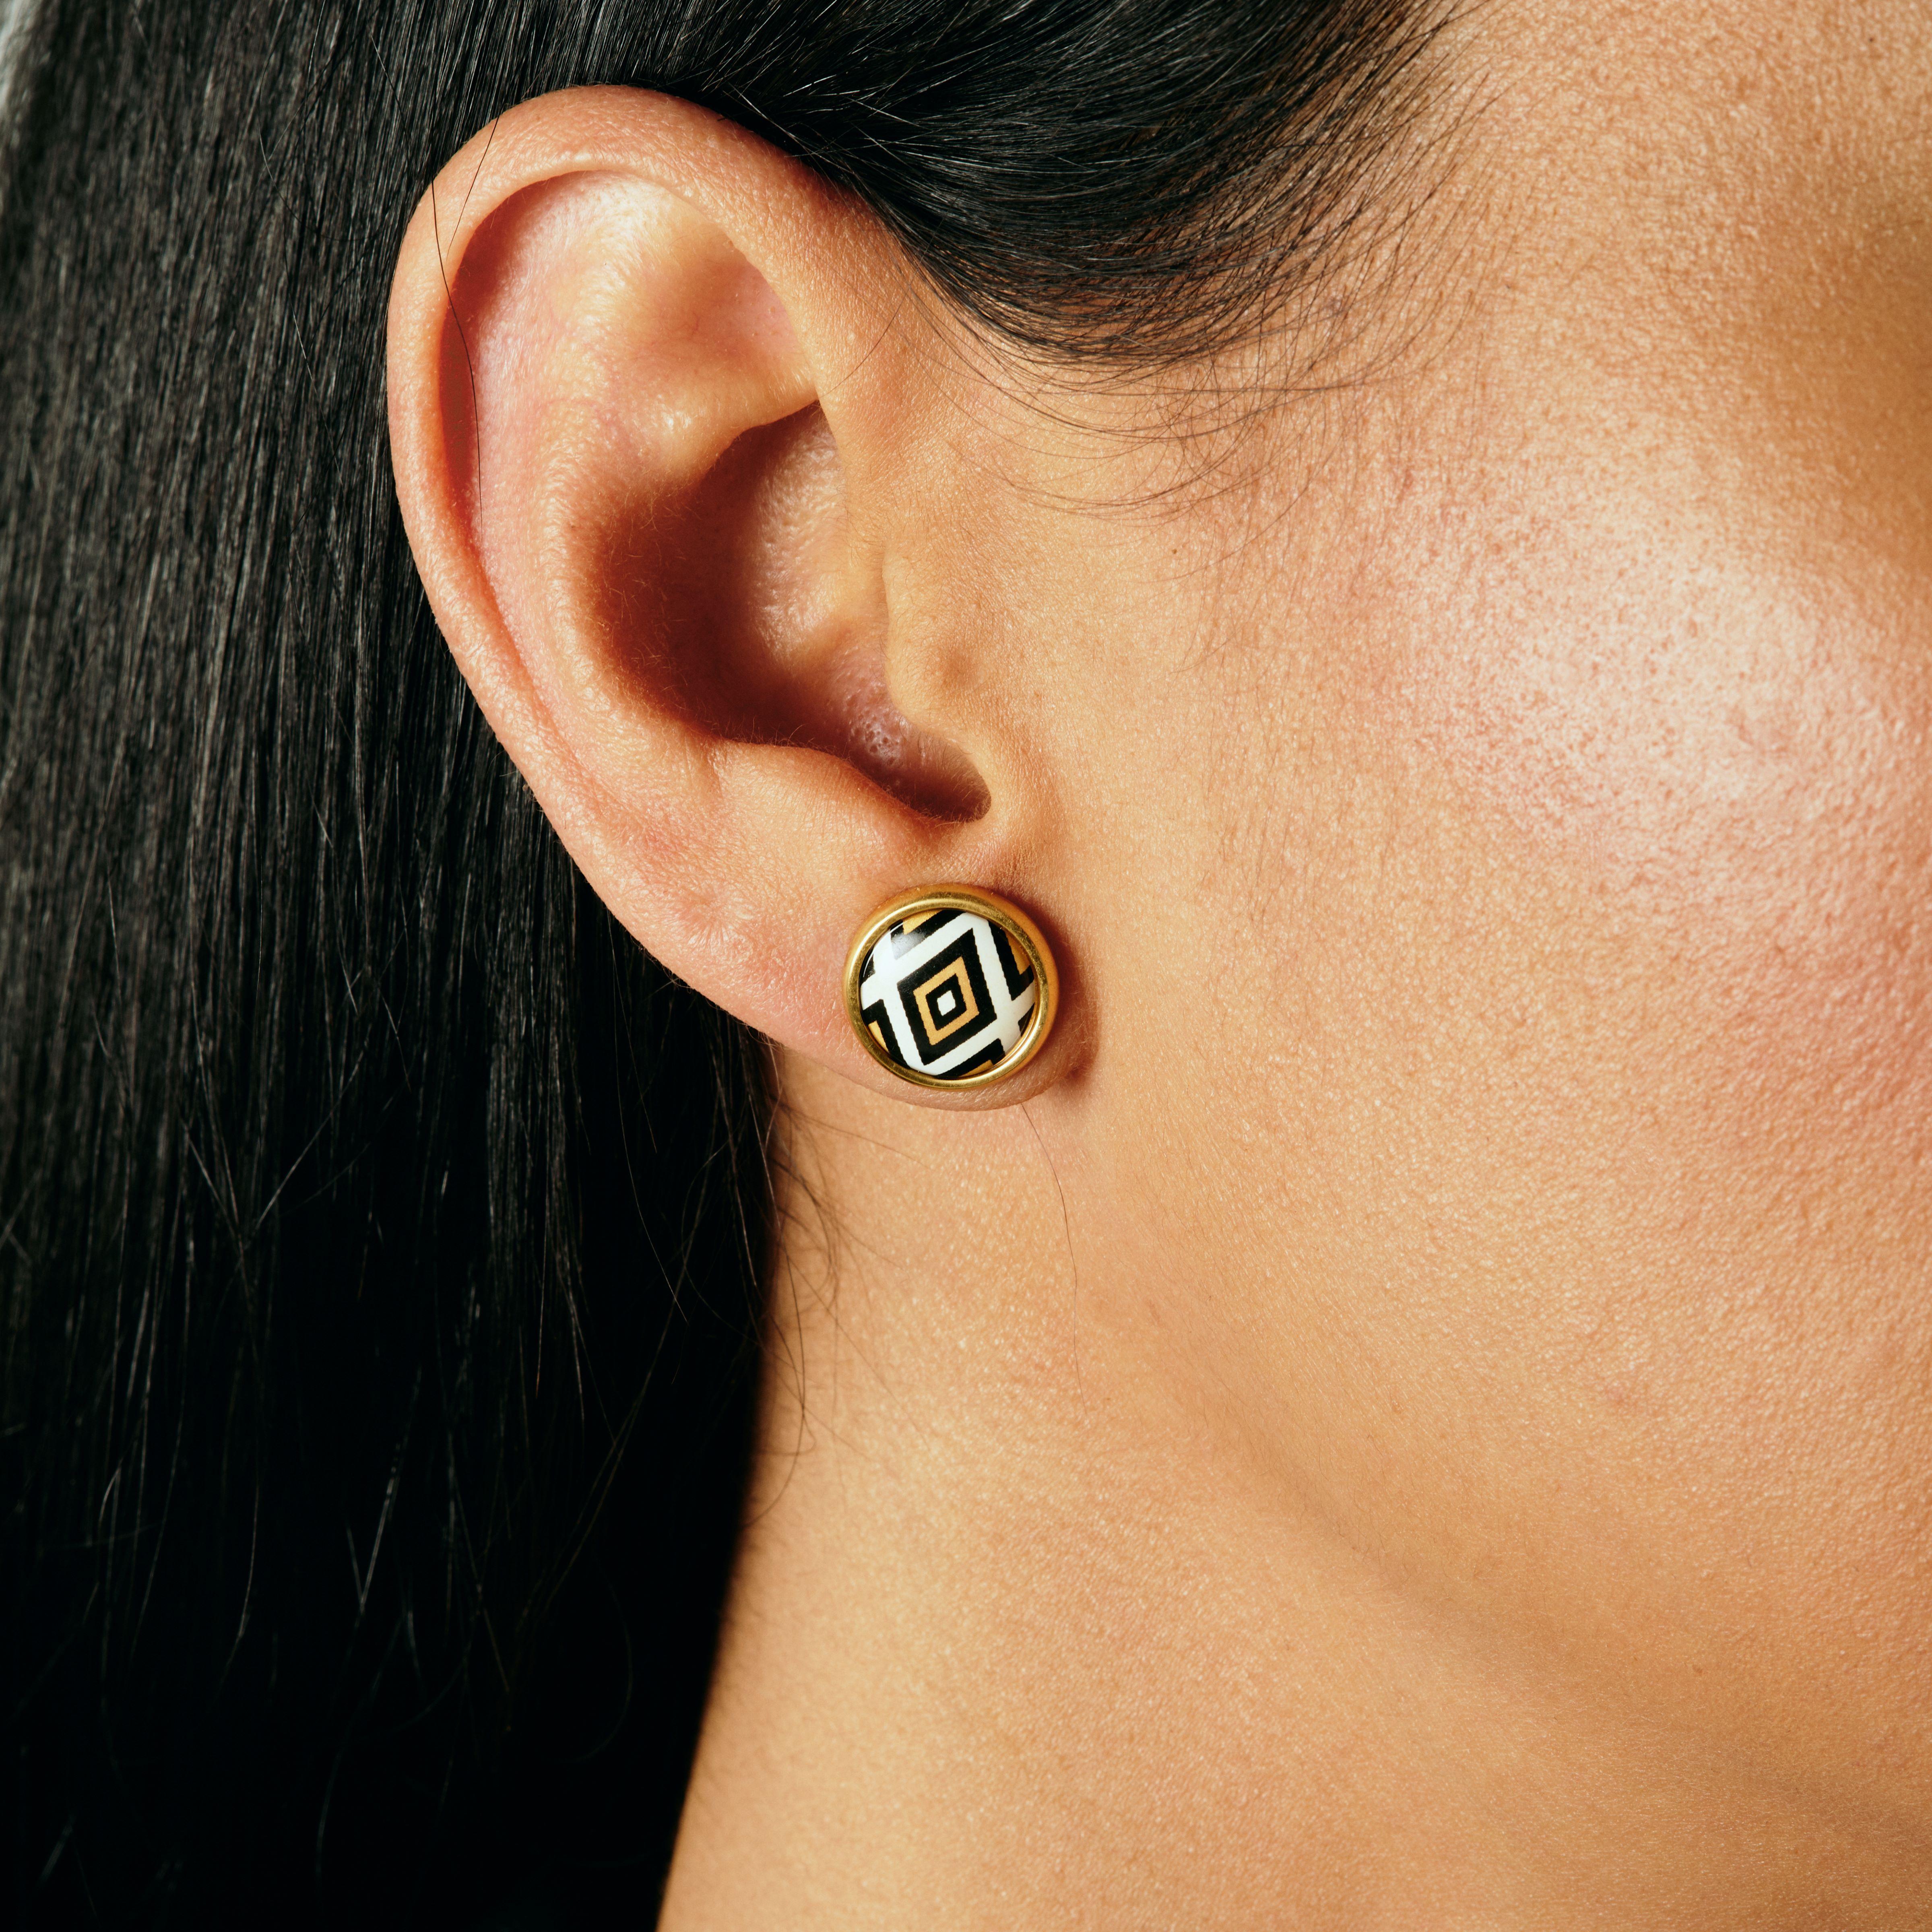 Wir präsentieren unseren Legacy-Ohrring. Gönnen Sie sich einen exquisiten Stil mit unseren Ohrringen aus 18k vergoldetem Edelstahl. Diese hypoallergenen Ohrringe, die von Hand mit leuchtender Feueremaille bemalt wurden, sind ein wahres Meisterwerk